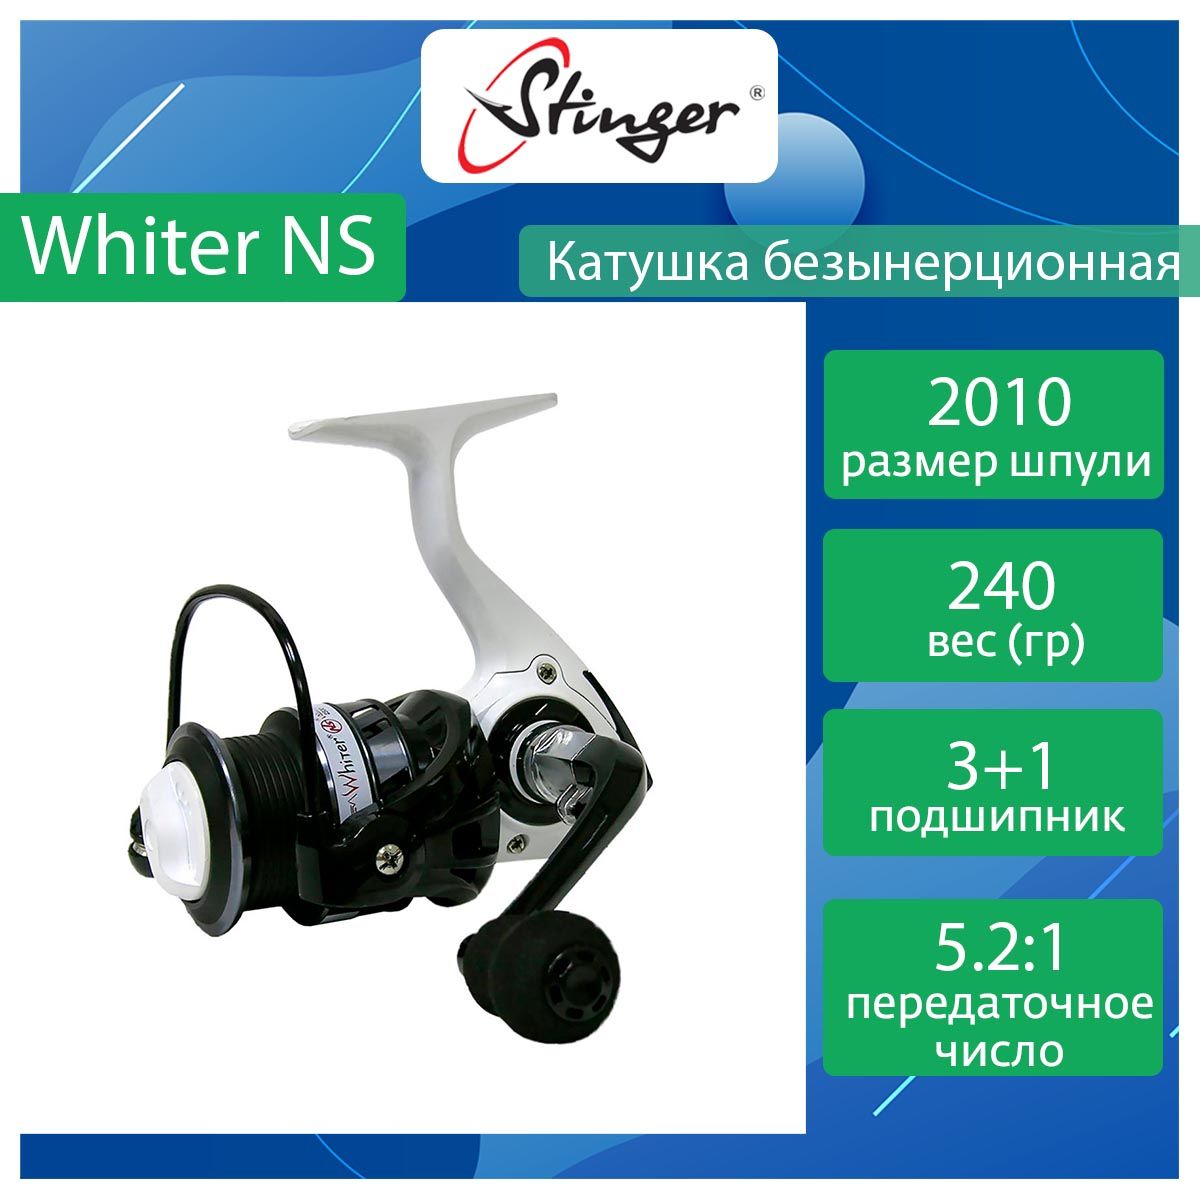 Катушка для рыбалки безынерционная Stinger Whiter NS ef56850